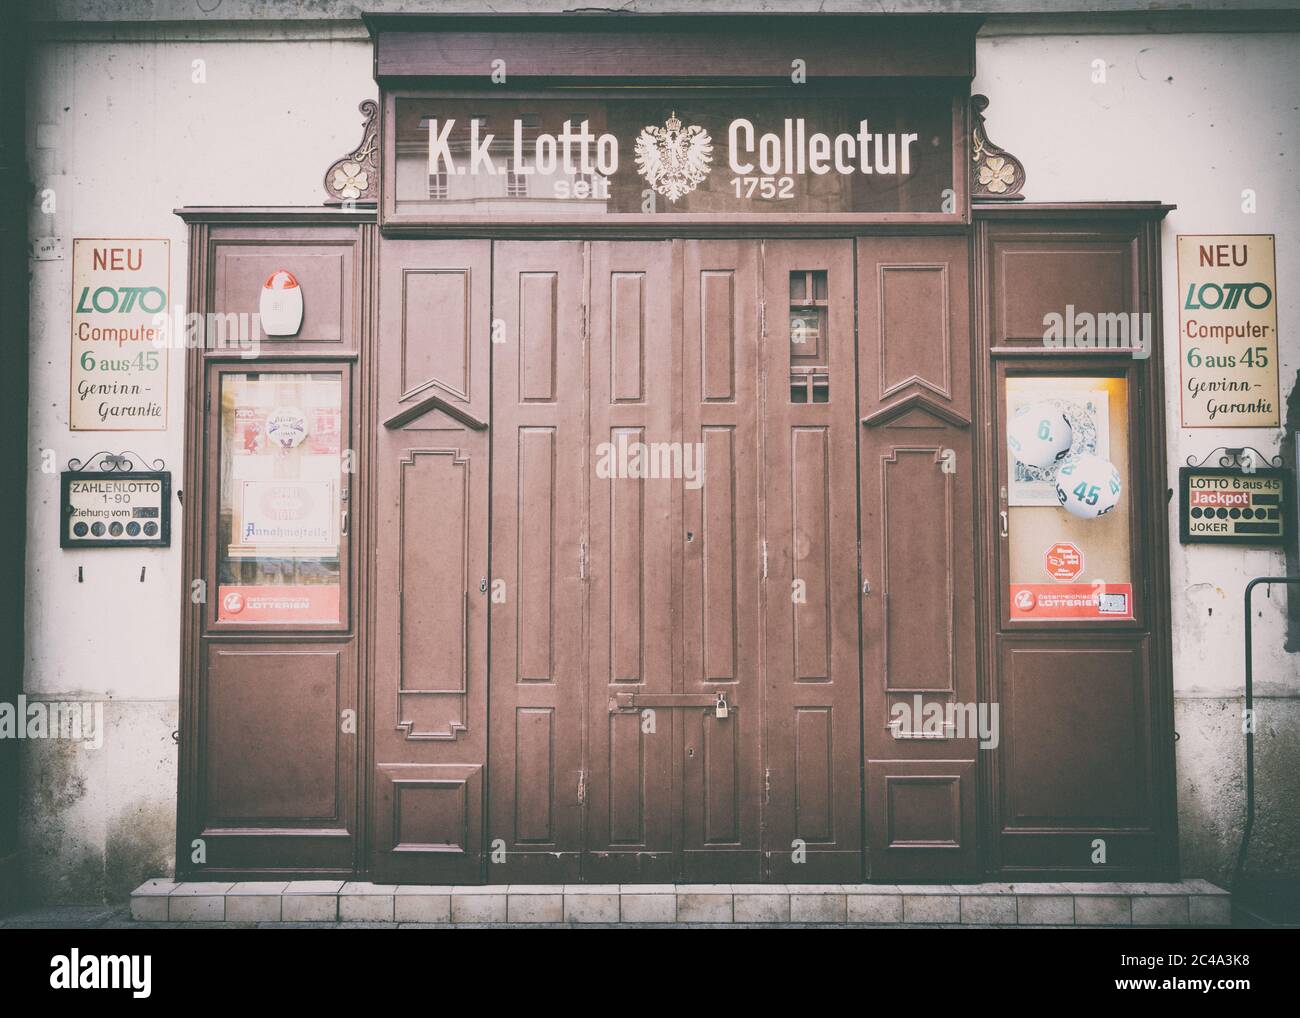 Questo negozio vende biglietti per lotterie dal 1752 a Vienna. Foto Stock